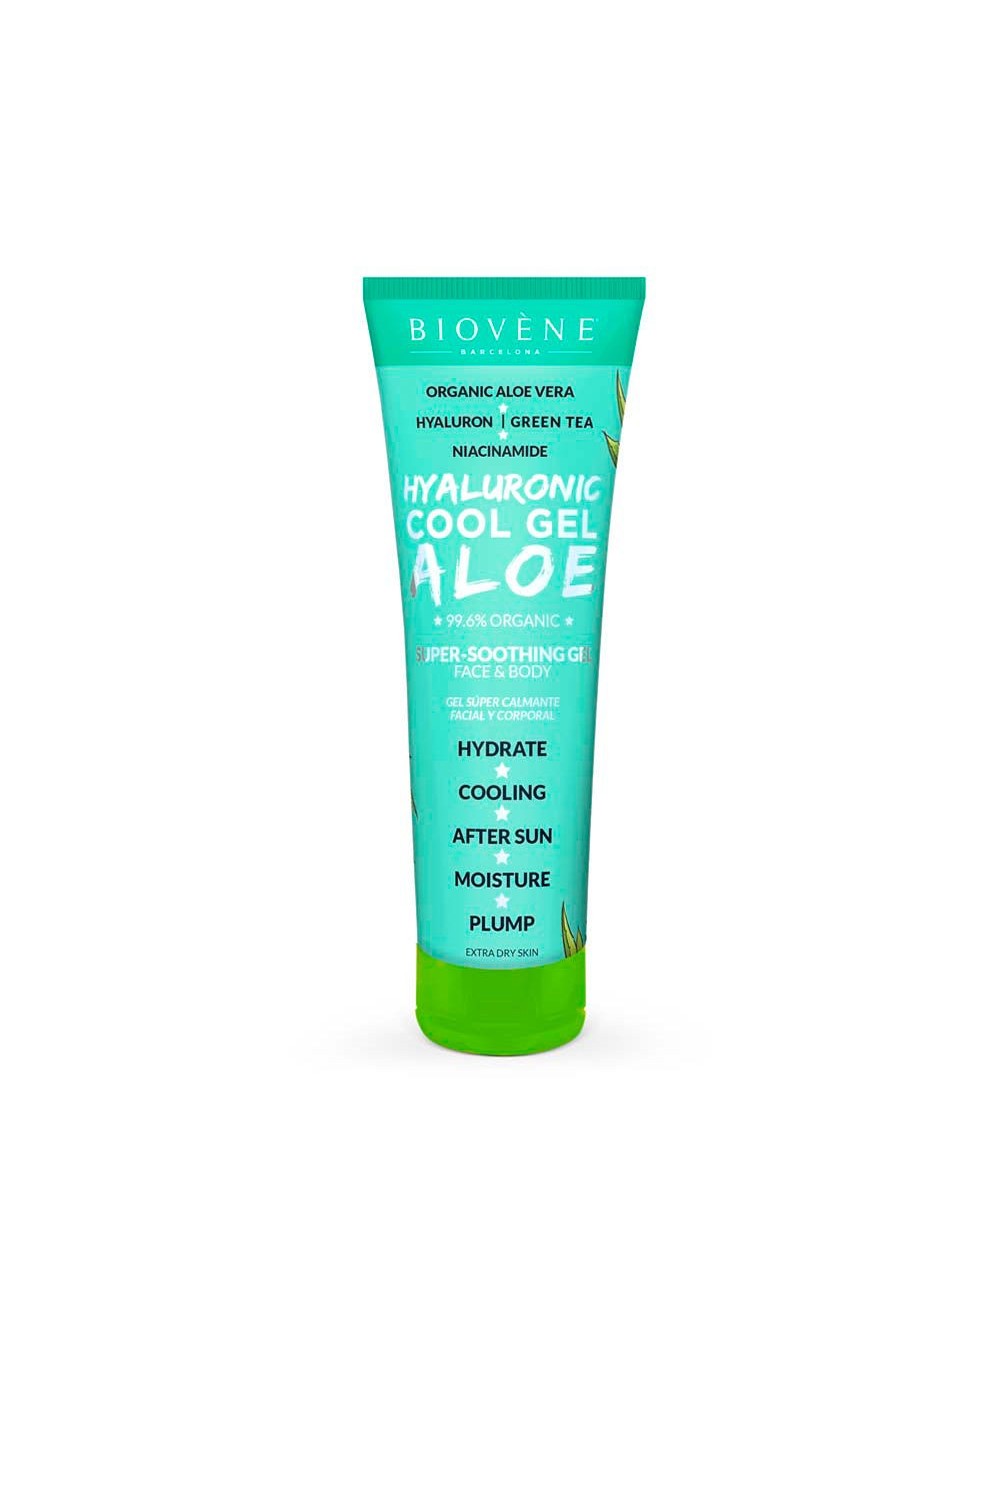 Biovene Hyaluronic Cool Gel Aloe Super-Soothing Gel Face y Body 200ml